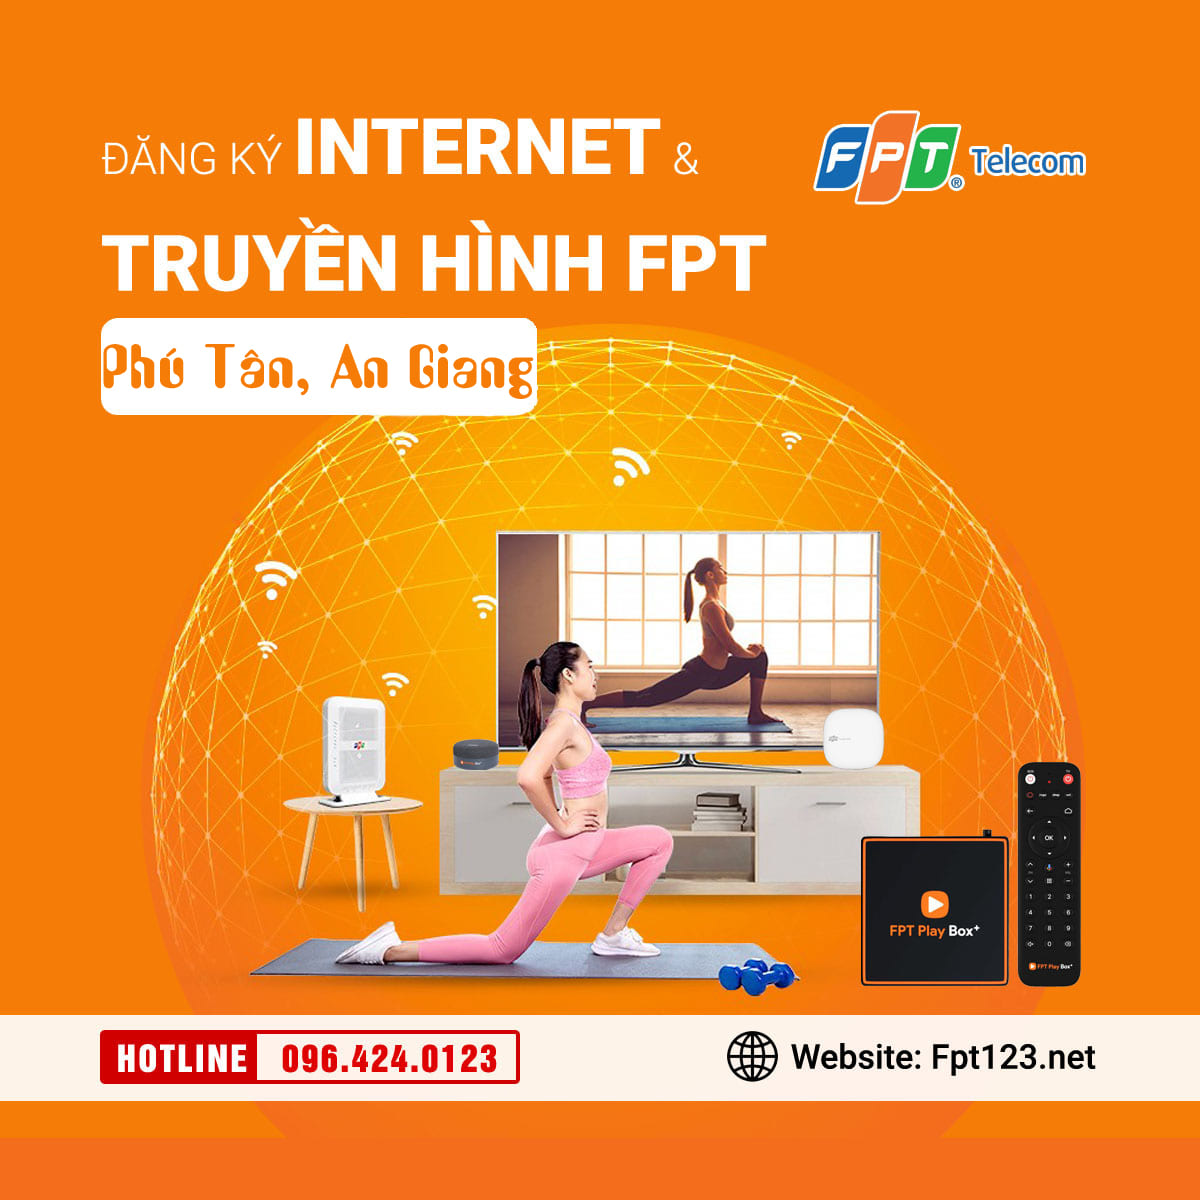 Đăng ký internet và truyền hình FPT Phú Tân, An Giang